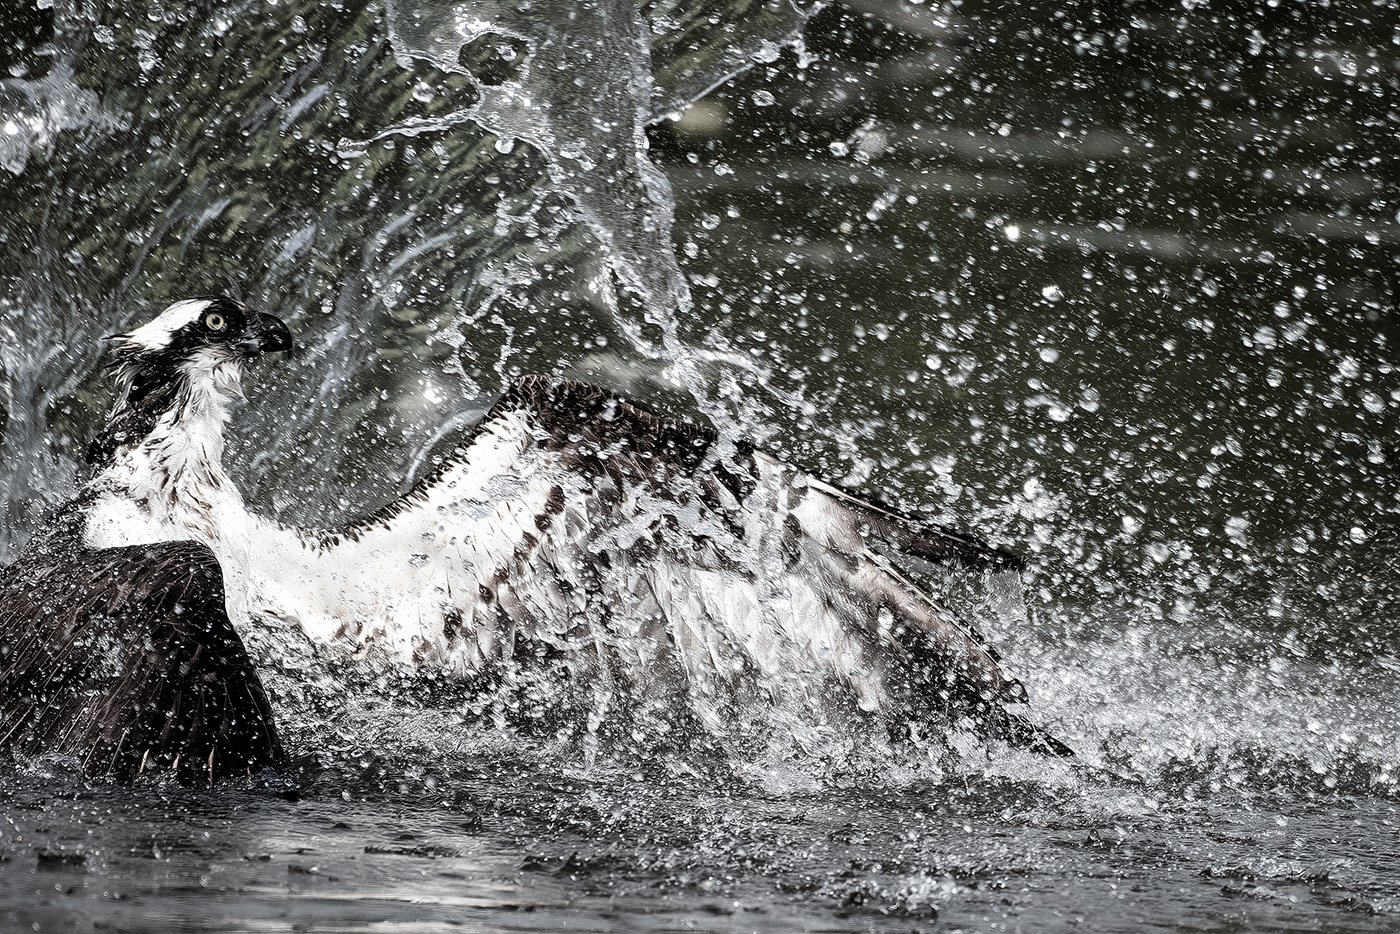 "Osprey Fishing" by Ian Winter